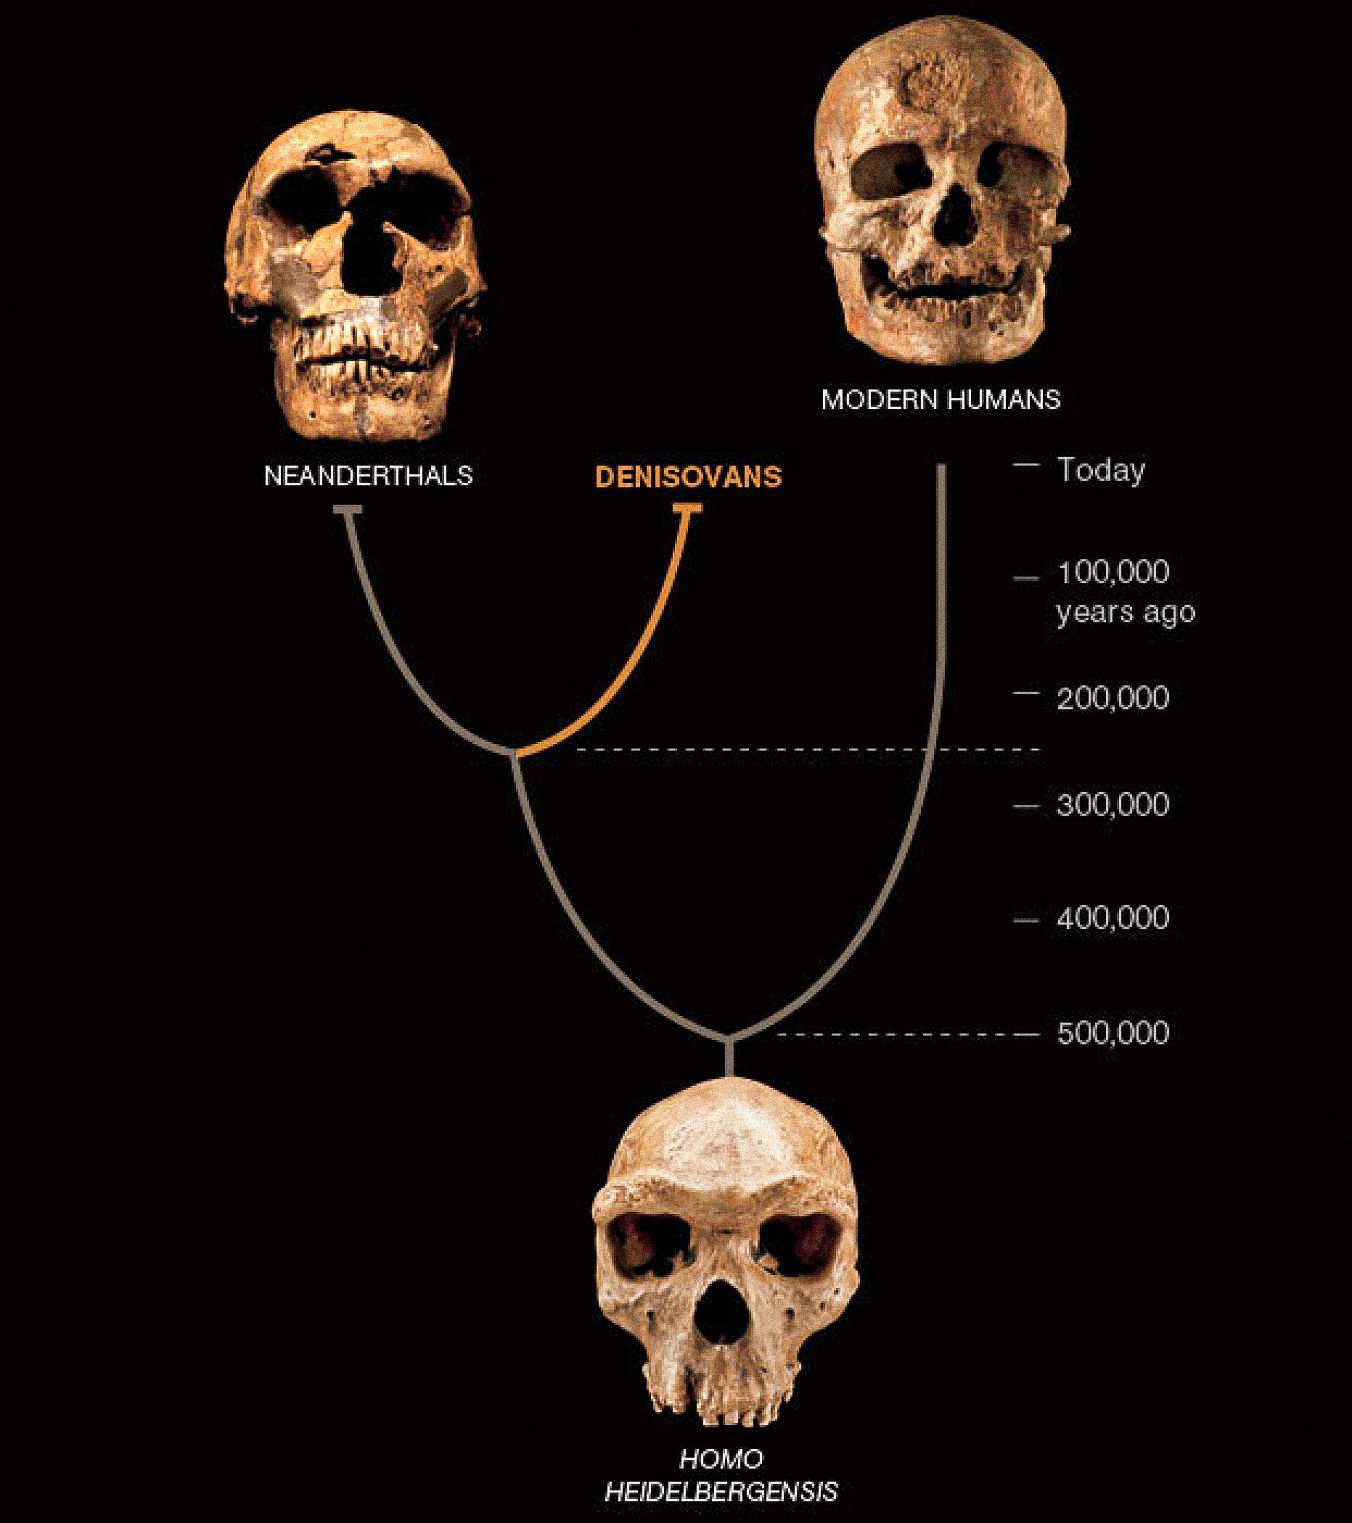 Третий тип людей, называемый денисовцами, похоже, сосуществовал в Азии с неандертальцами и ранними современными людьми. Последние два известны по многочисленным окаменелостям и артефактам. Денисовцы пока определяются только ДНК из одного костного чипа и двух зубов, но это открывает новый поворот в человеческой истории.